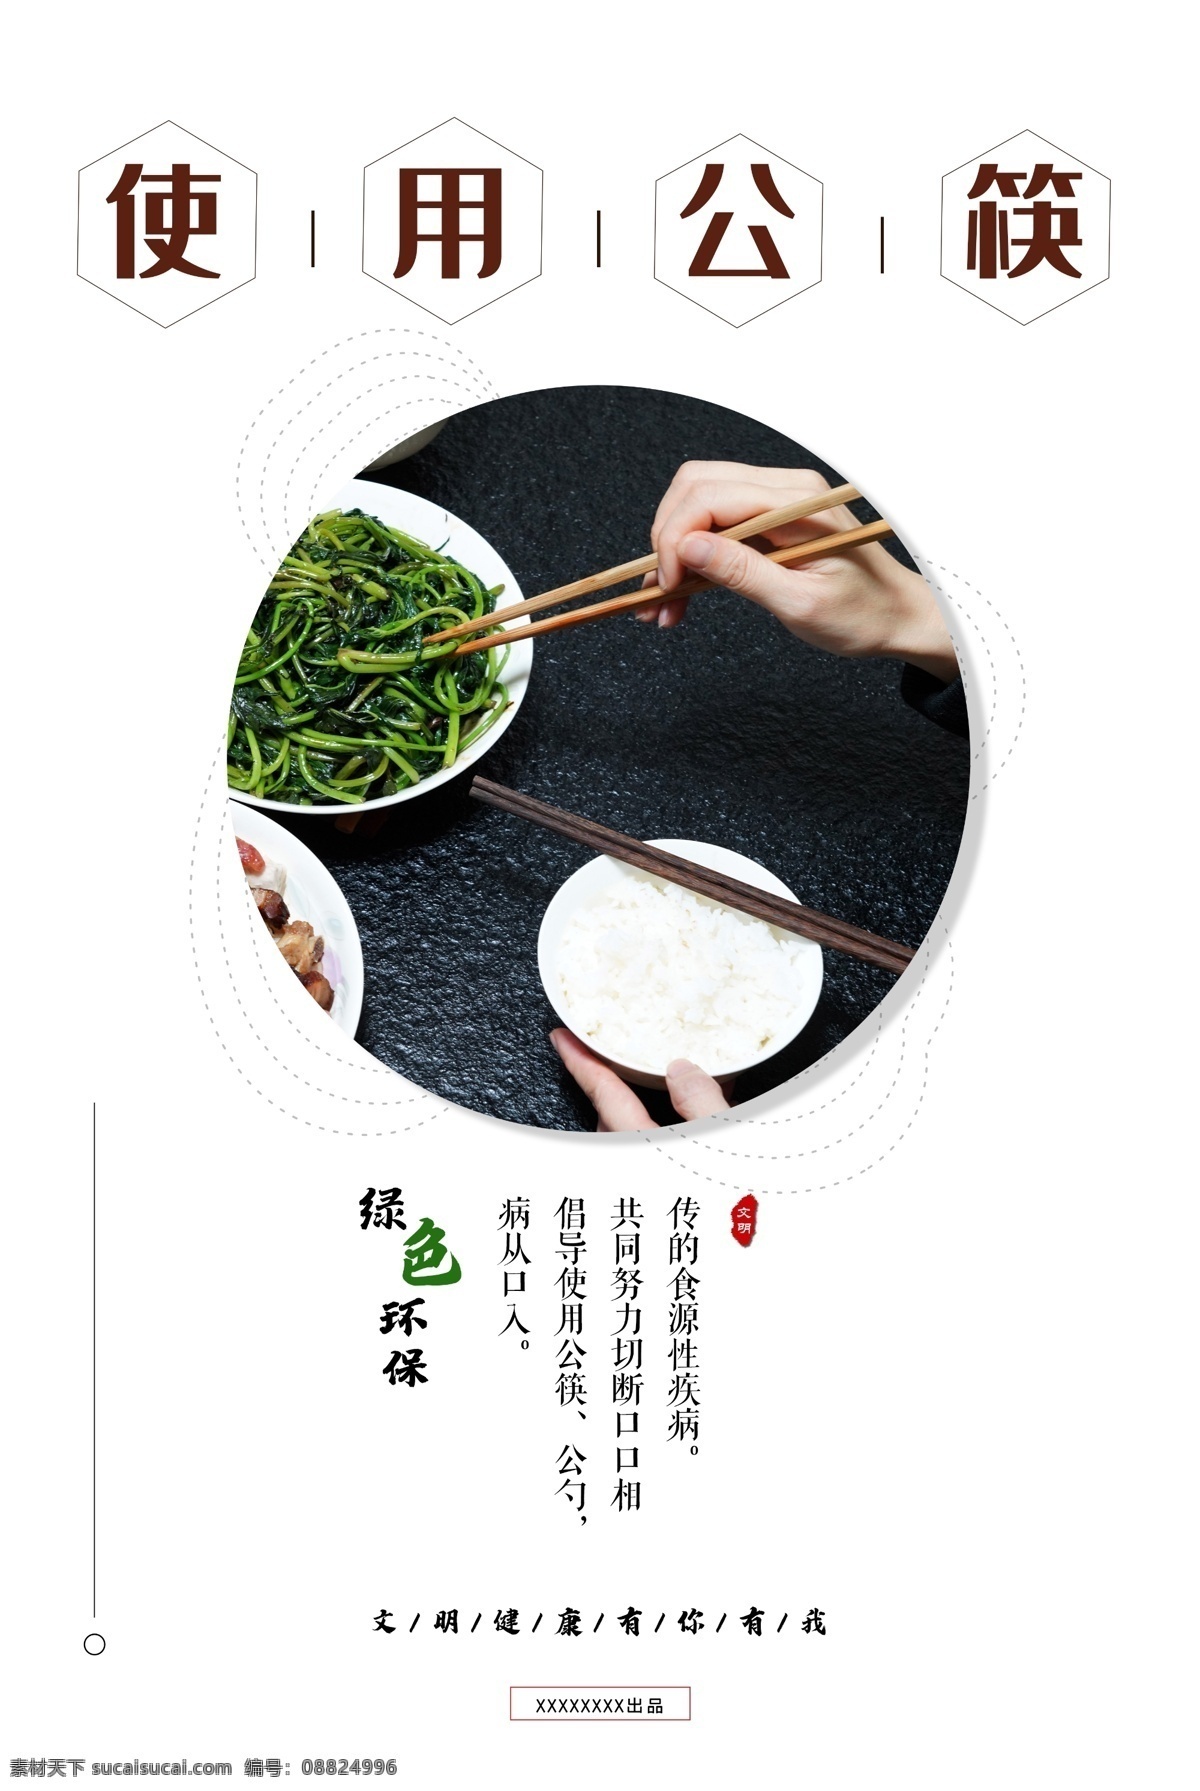 使用公筷海报 使用 公筷 海报 绿色 环保 文明 健康 公勺 创文 融媒中心 图片海报 宣传 文化 简约